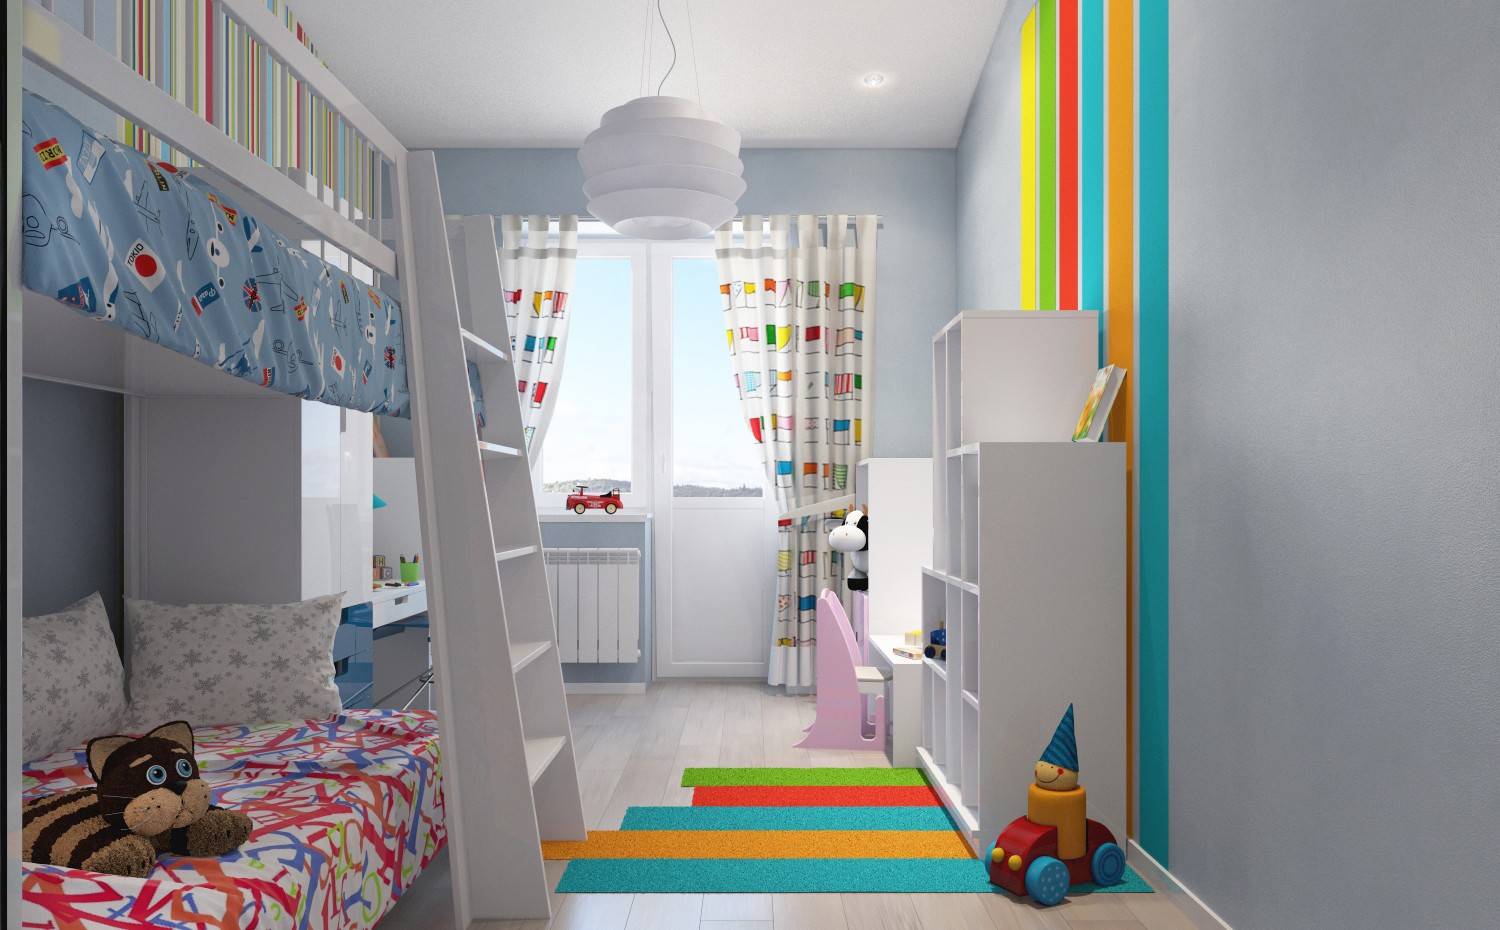 Обои для детской комнаты комбинированные: как скомбинировать в комнате, фото, для мальчиков, для девочки, видео | онлайн-журнал о ремонте и дизайне